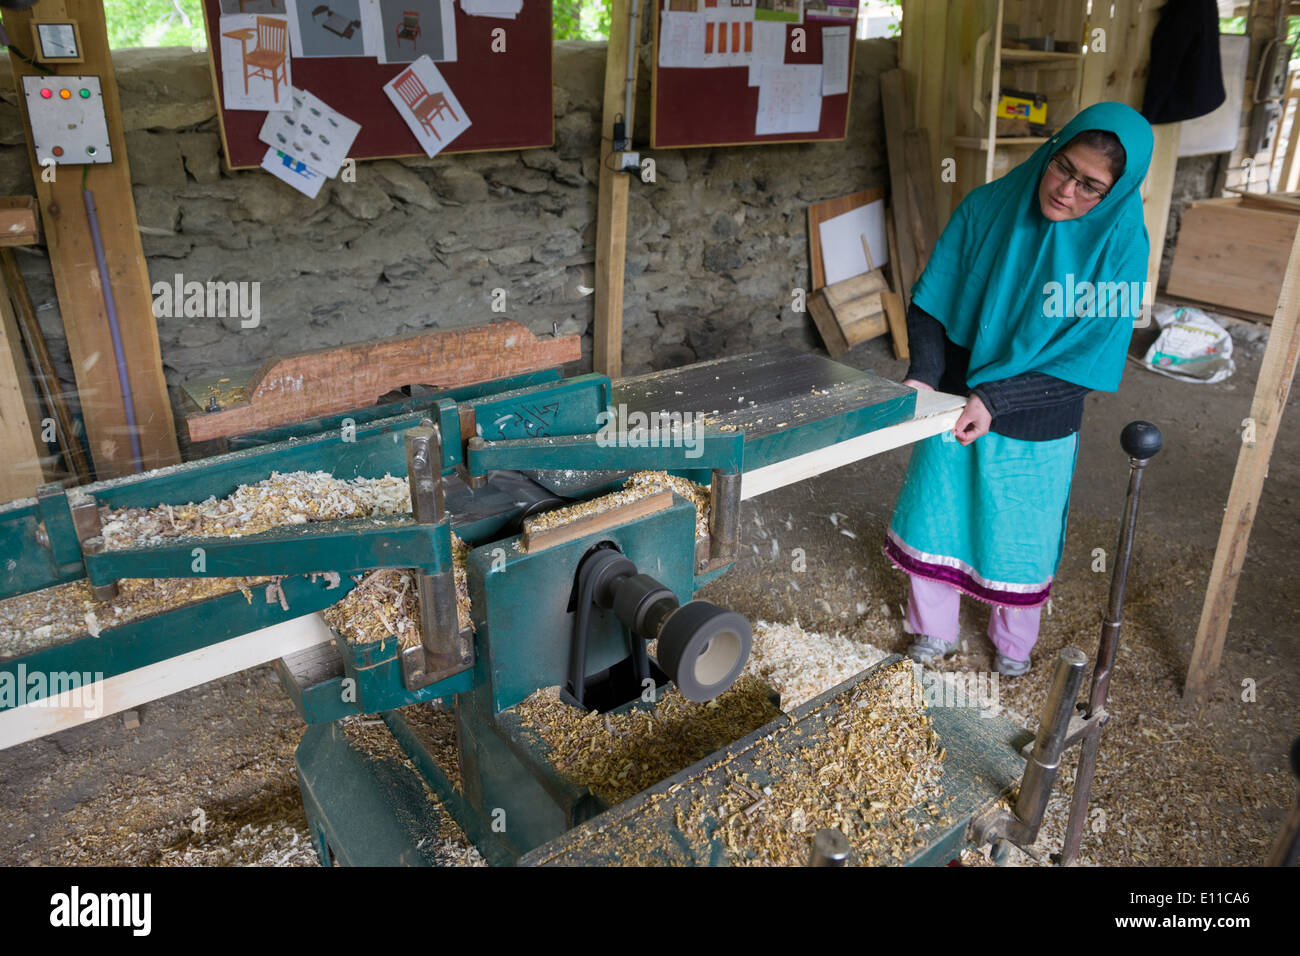 Mujer usando una herramienta eléctrica en una caridad la enseñanza de mujeres pakistaníes, carpintería Altit Village, cerca de Karimabad., Hunza Valley, Gilgit-Baltistán, Pakistán Foto de stock